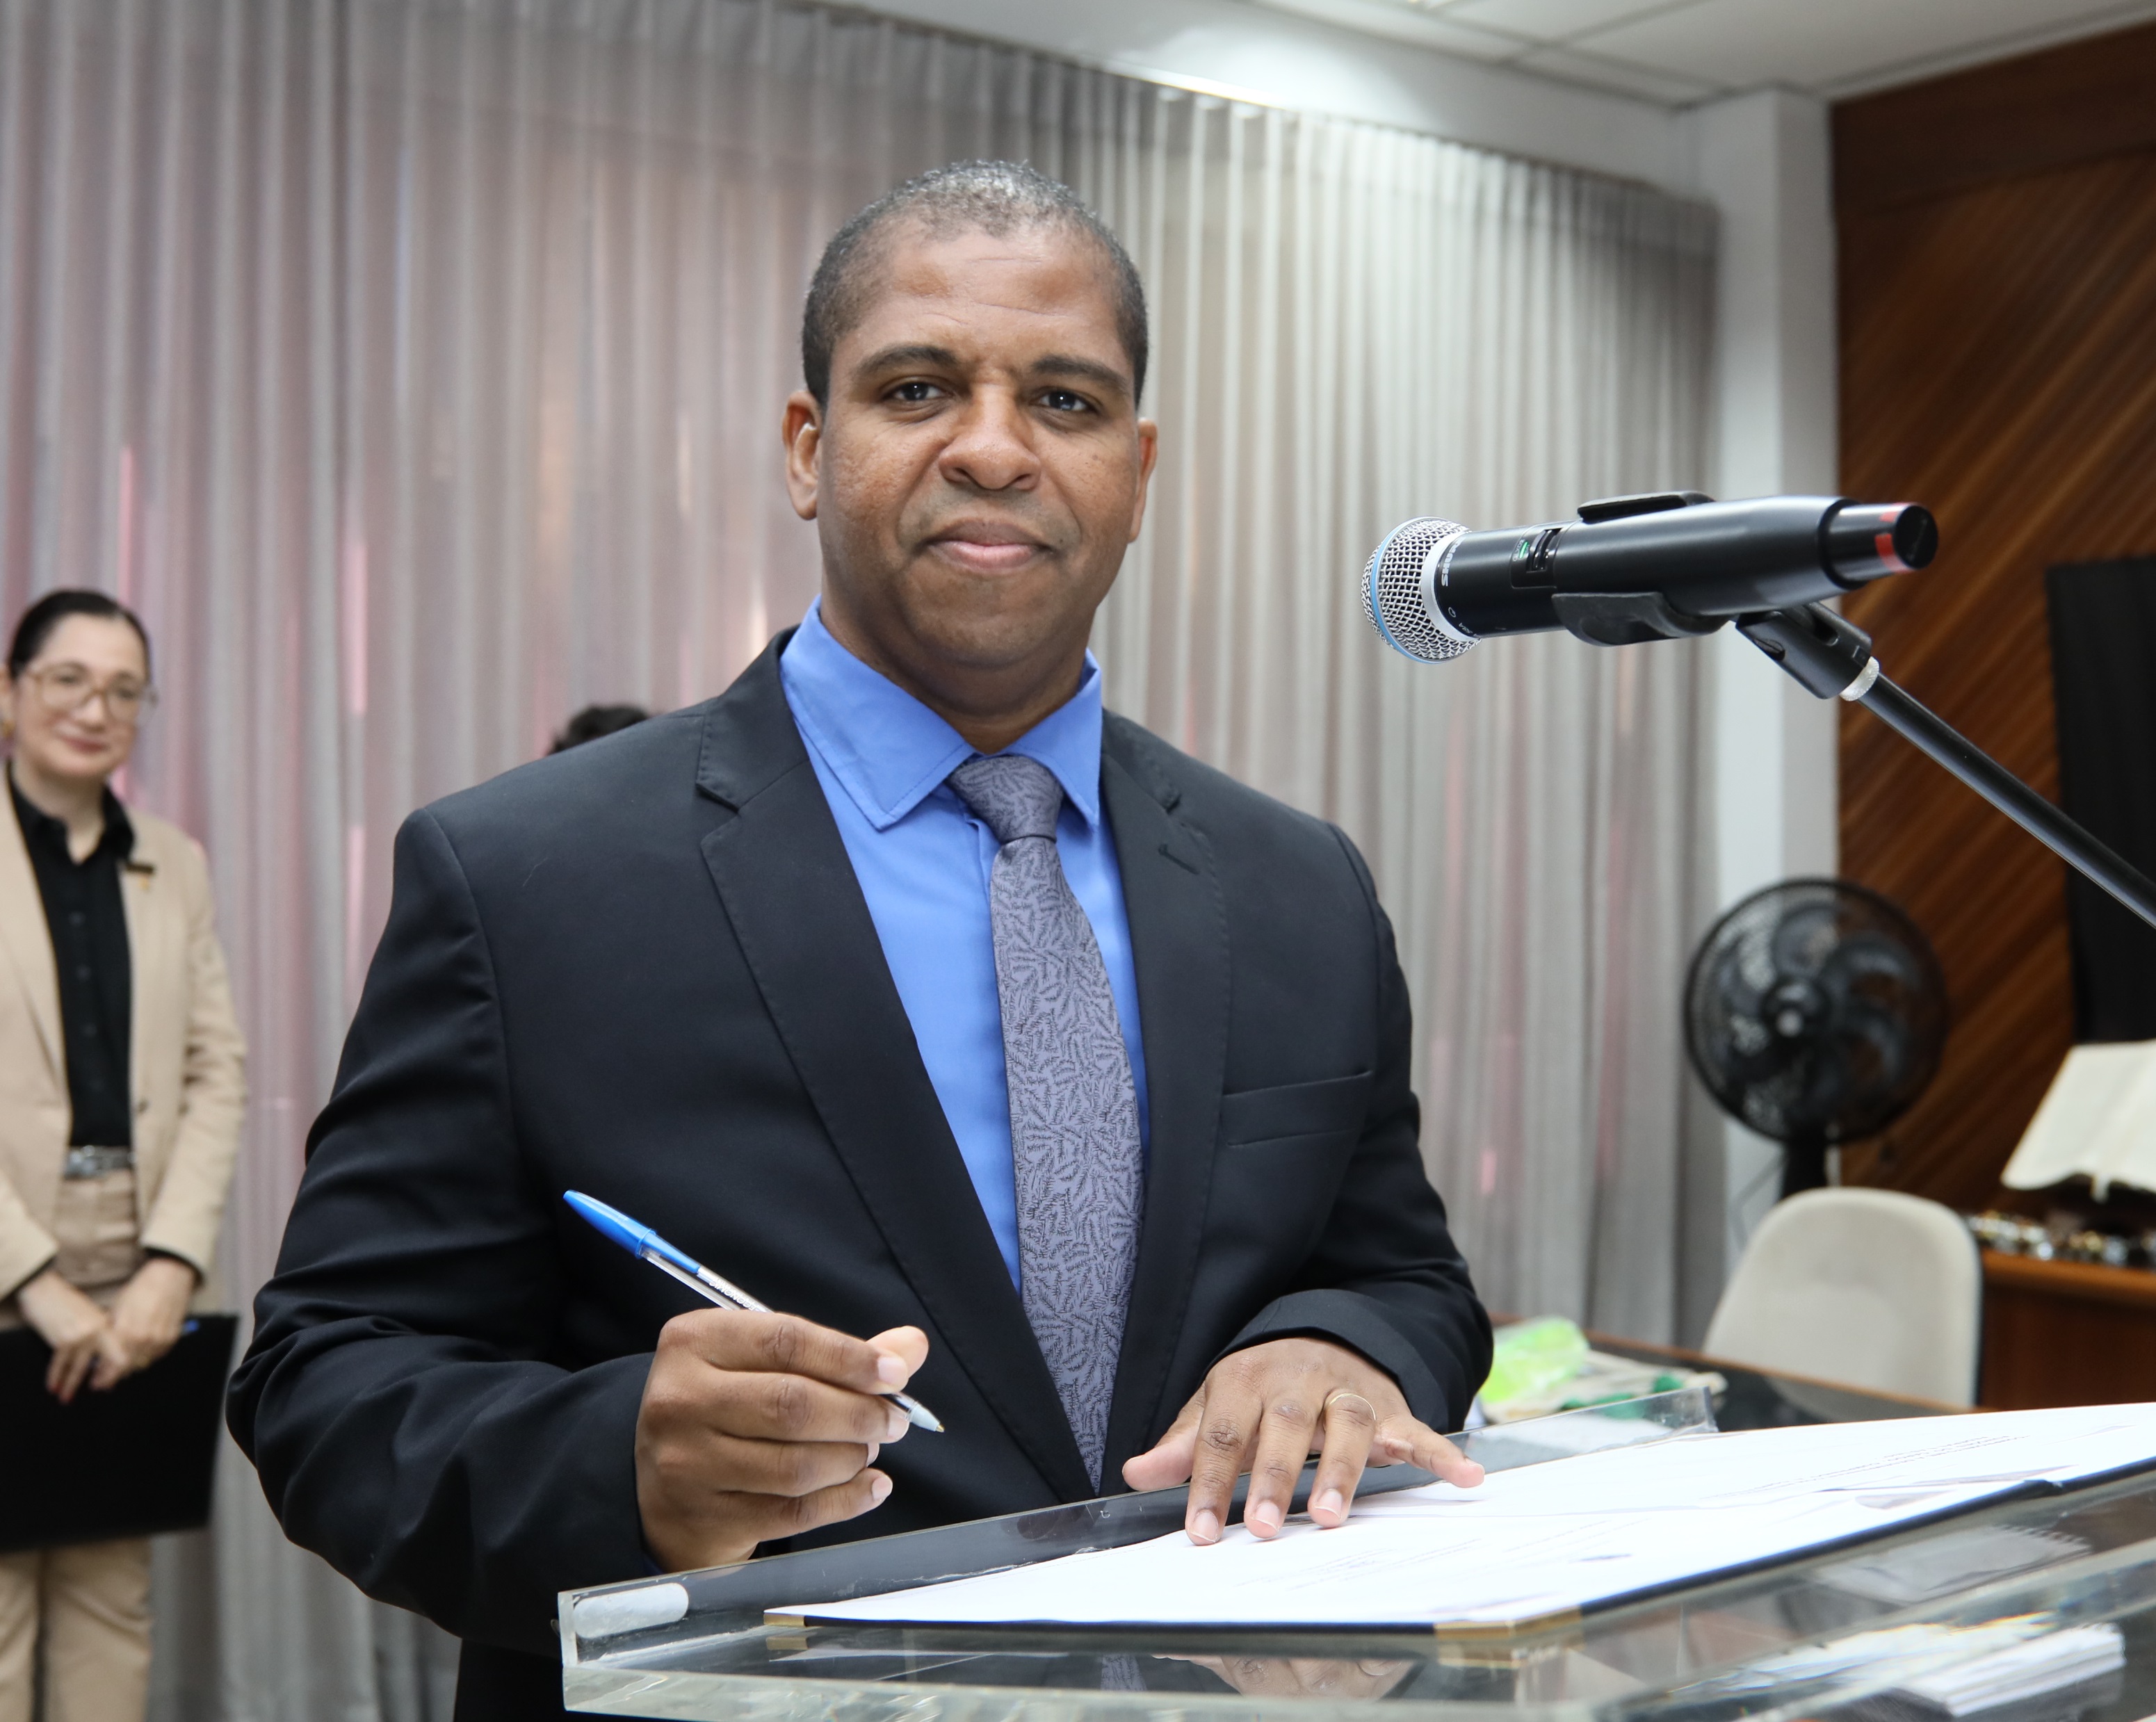 O juiz Gilvan Oliveira Silva Azevedo, homem negro de terno e grava azul, assinando o termo de posse como titular da Vara do Trabalho (VT) de Bom Jesus da Lapa